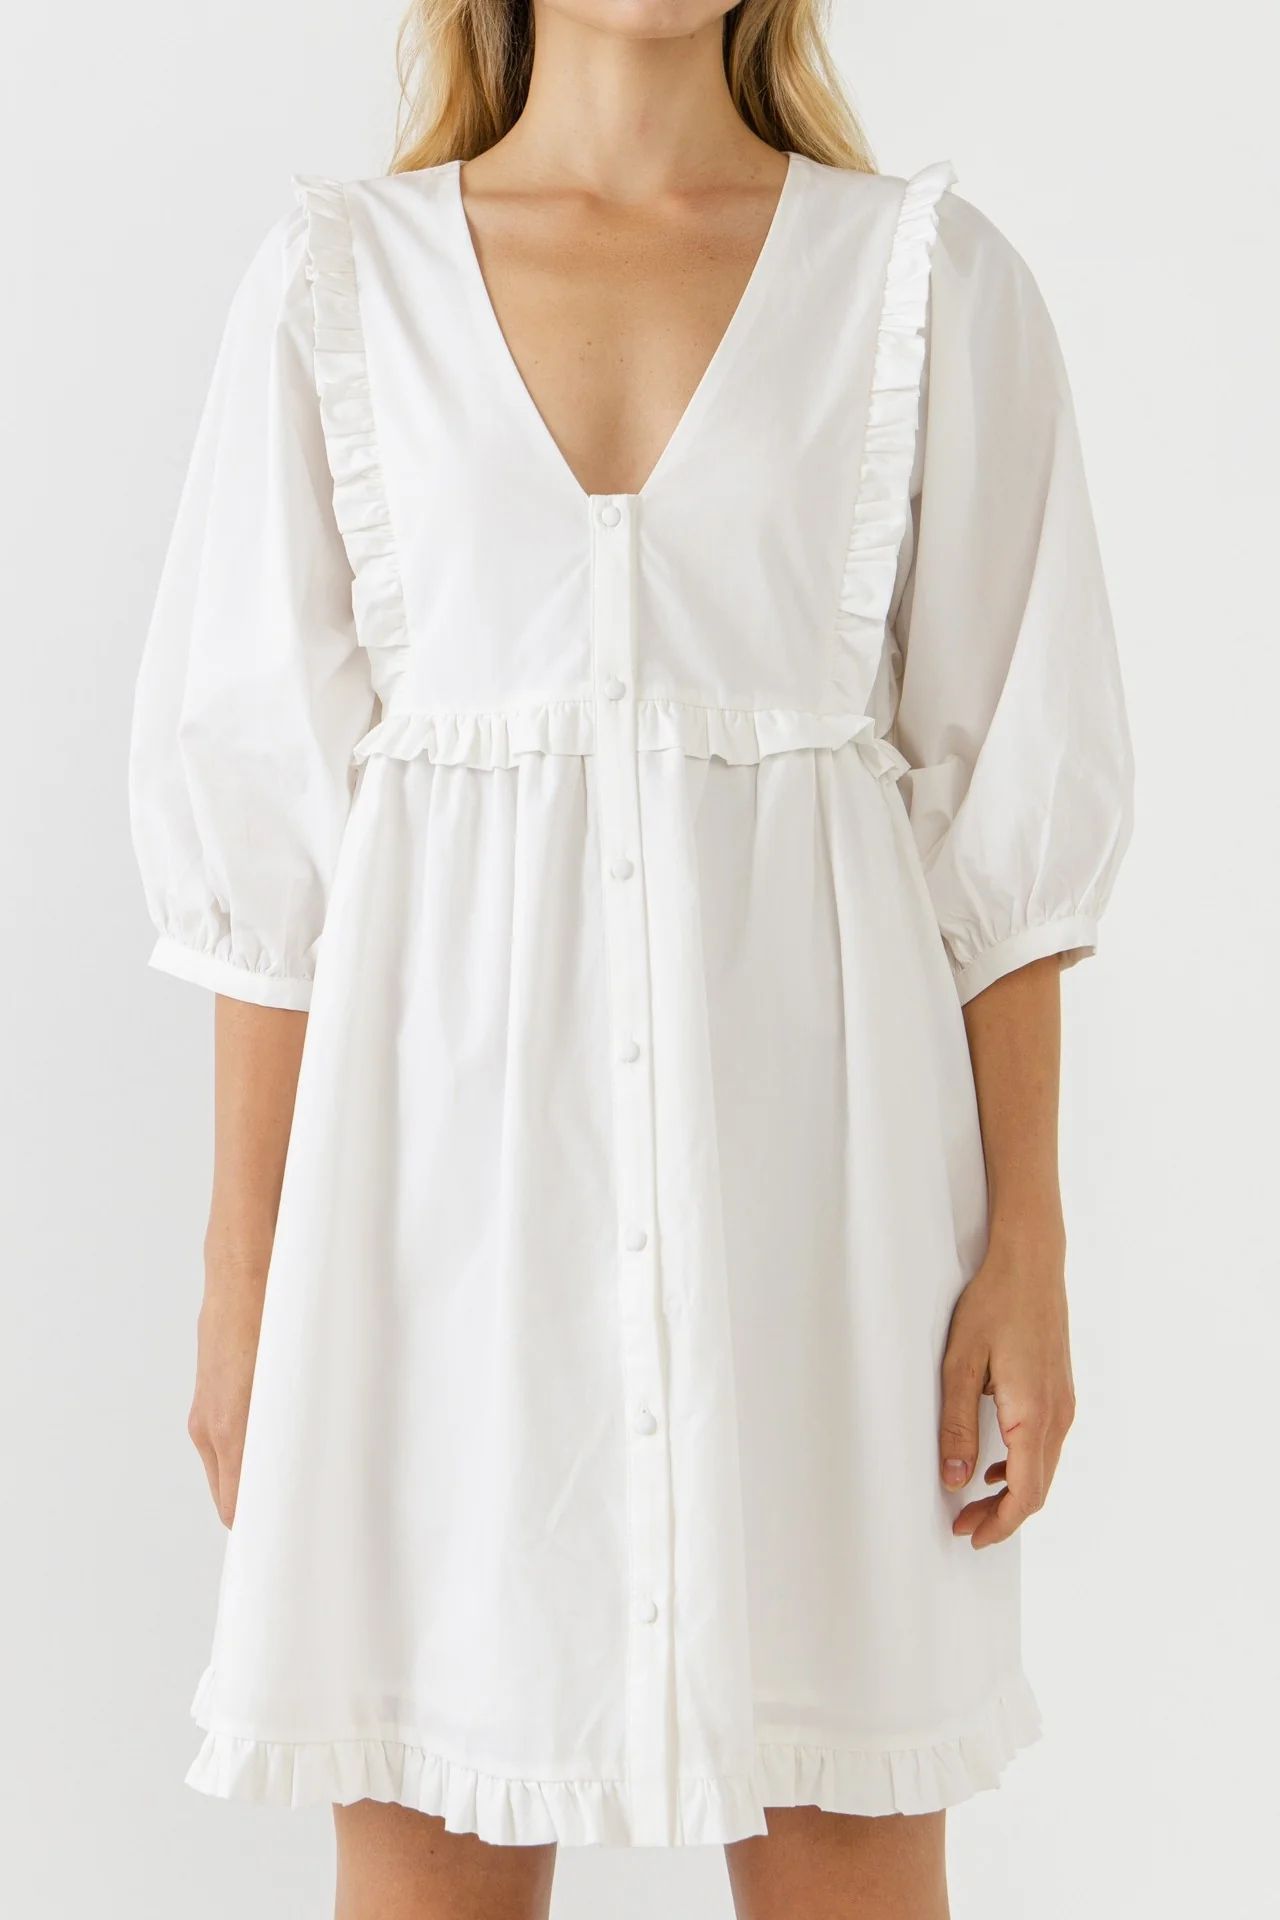 White Button Down Baby Doll Dress | Shop BIRDIE